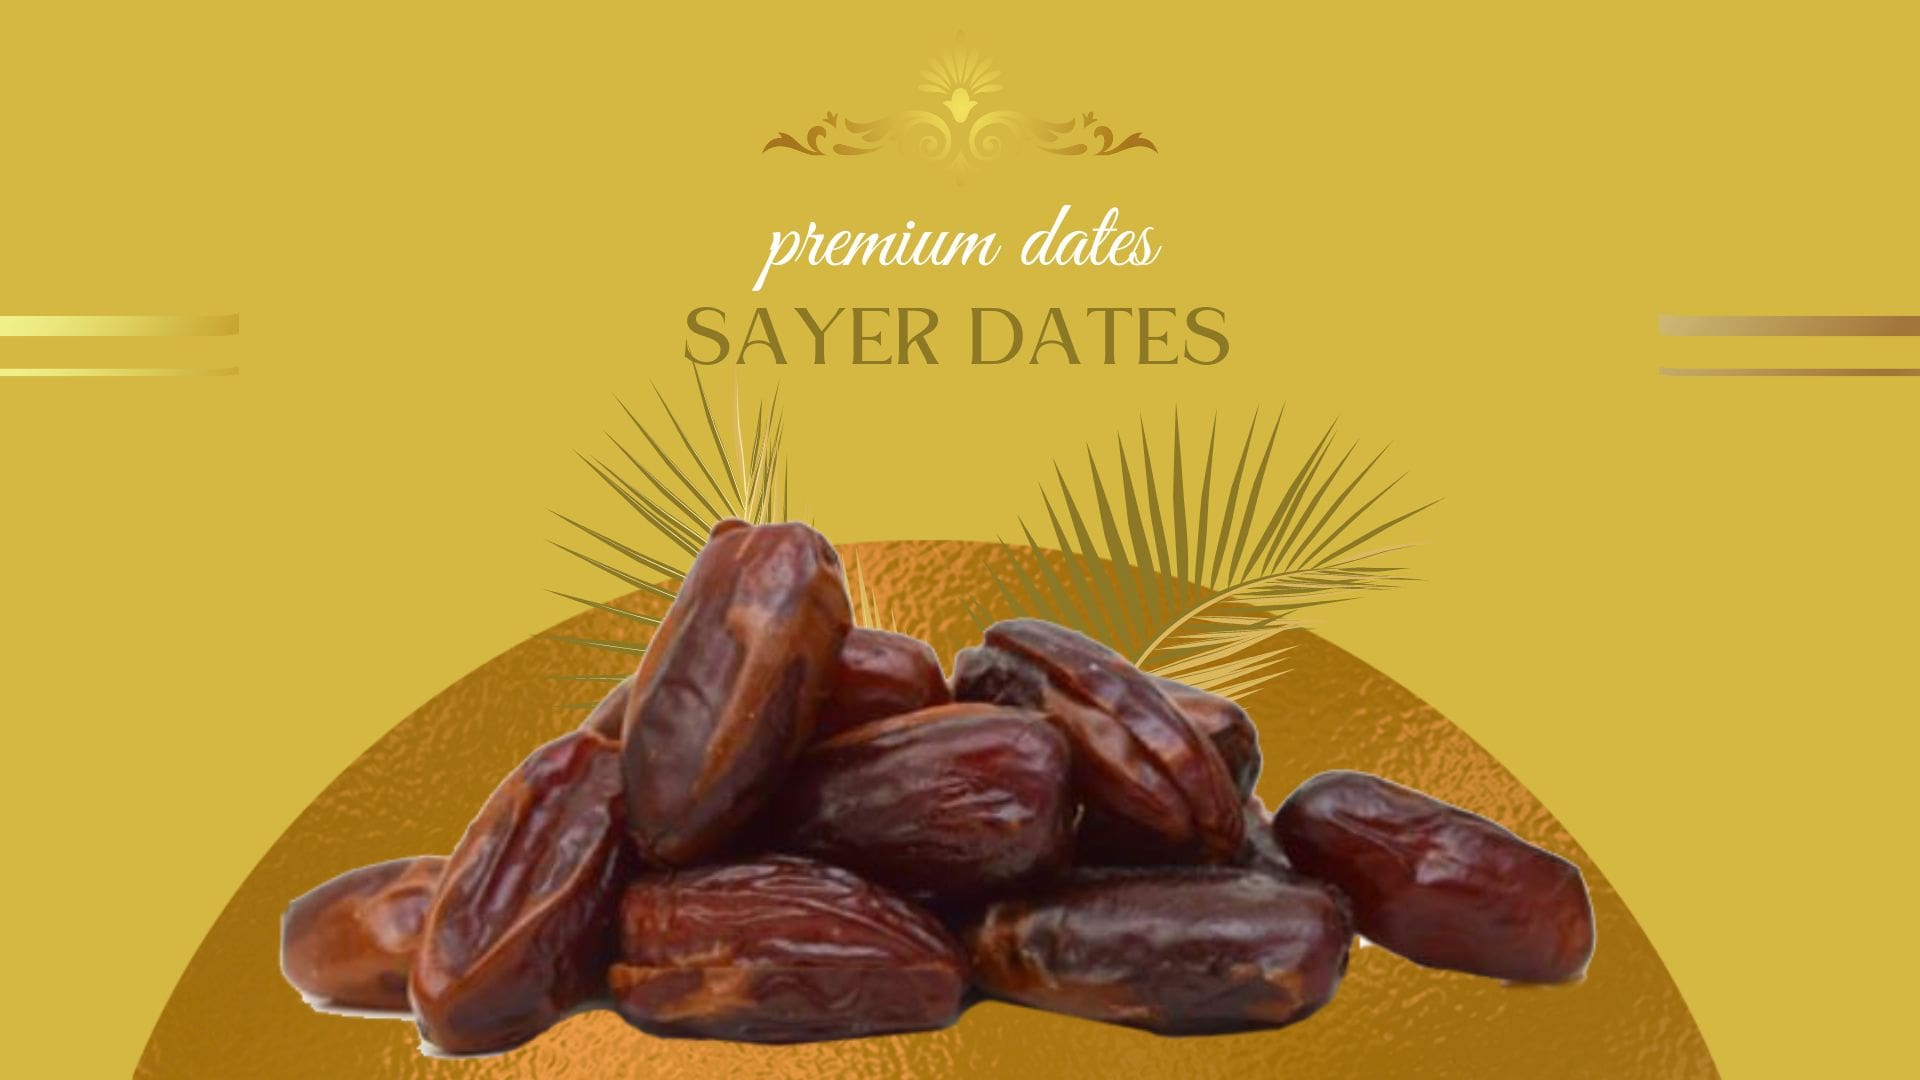 sayer dates supplier